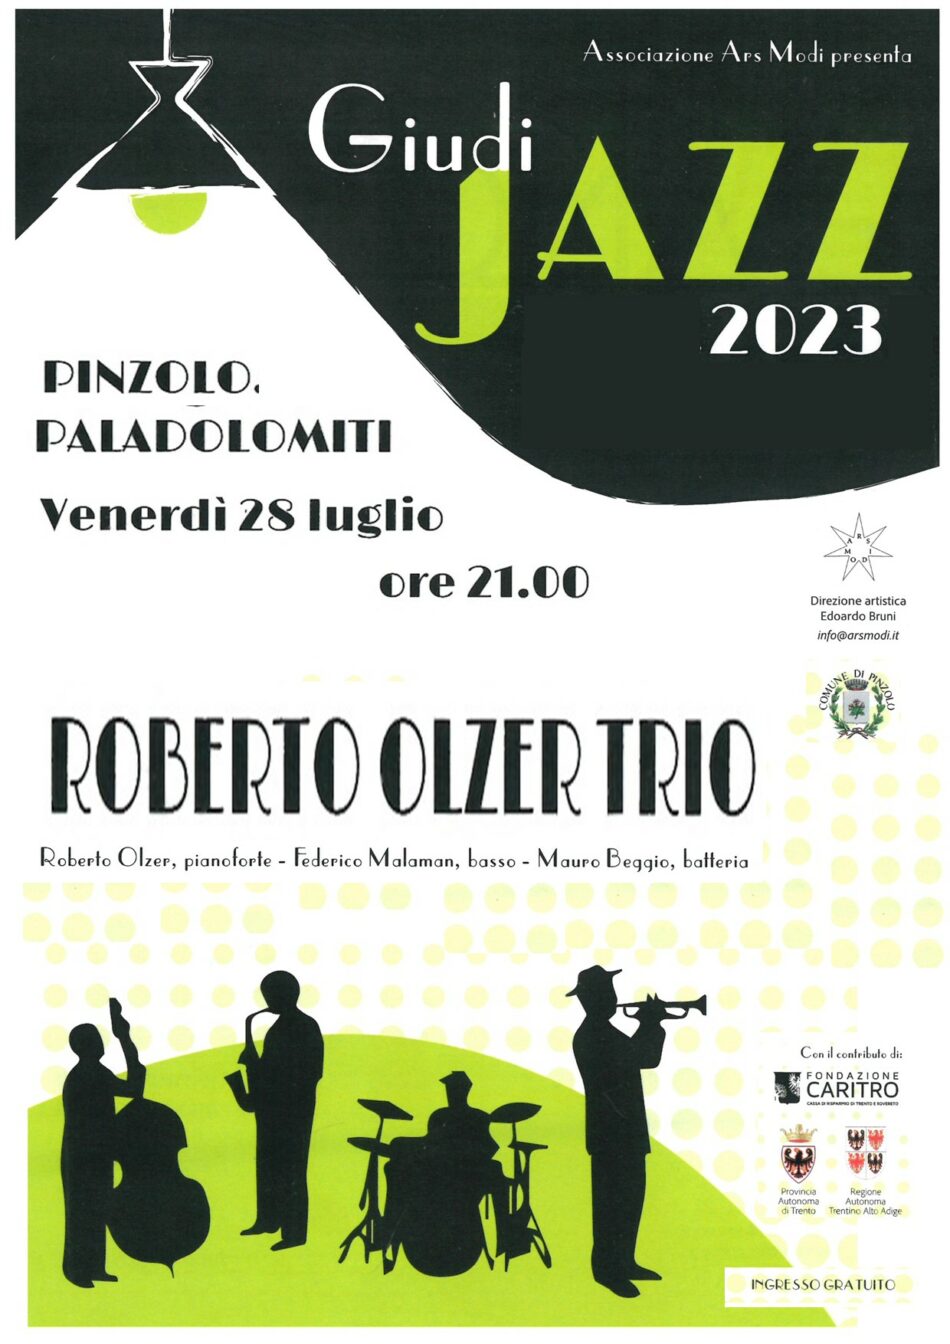 Pinzolo Paladolomiti Venerdì 28 luglio ore 21: Roberto Olzer Trio